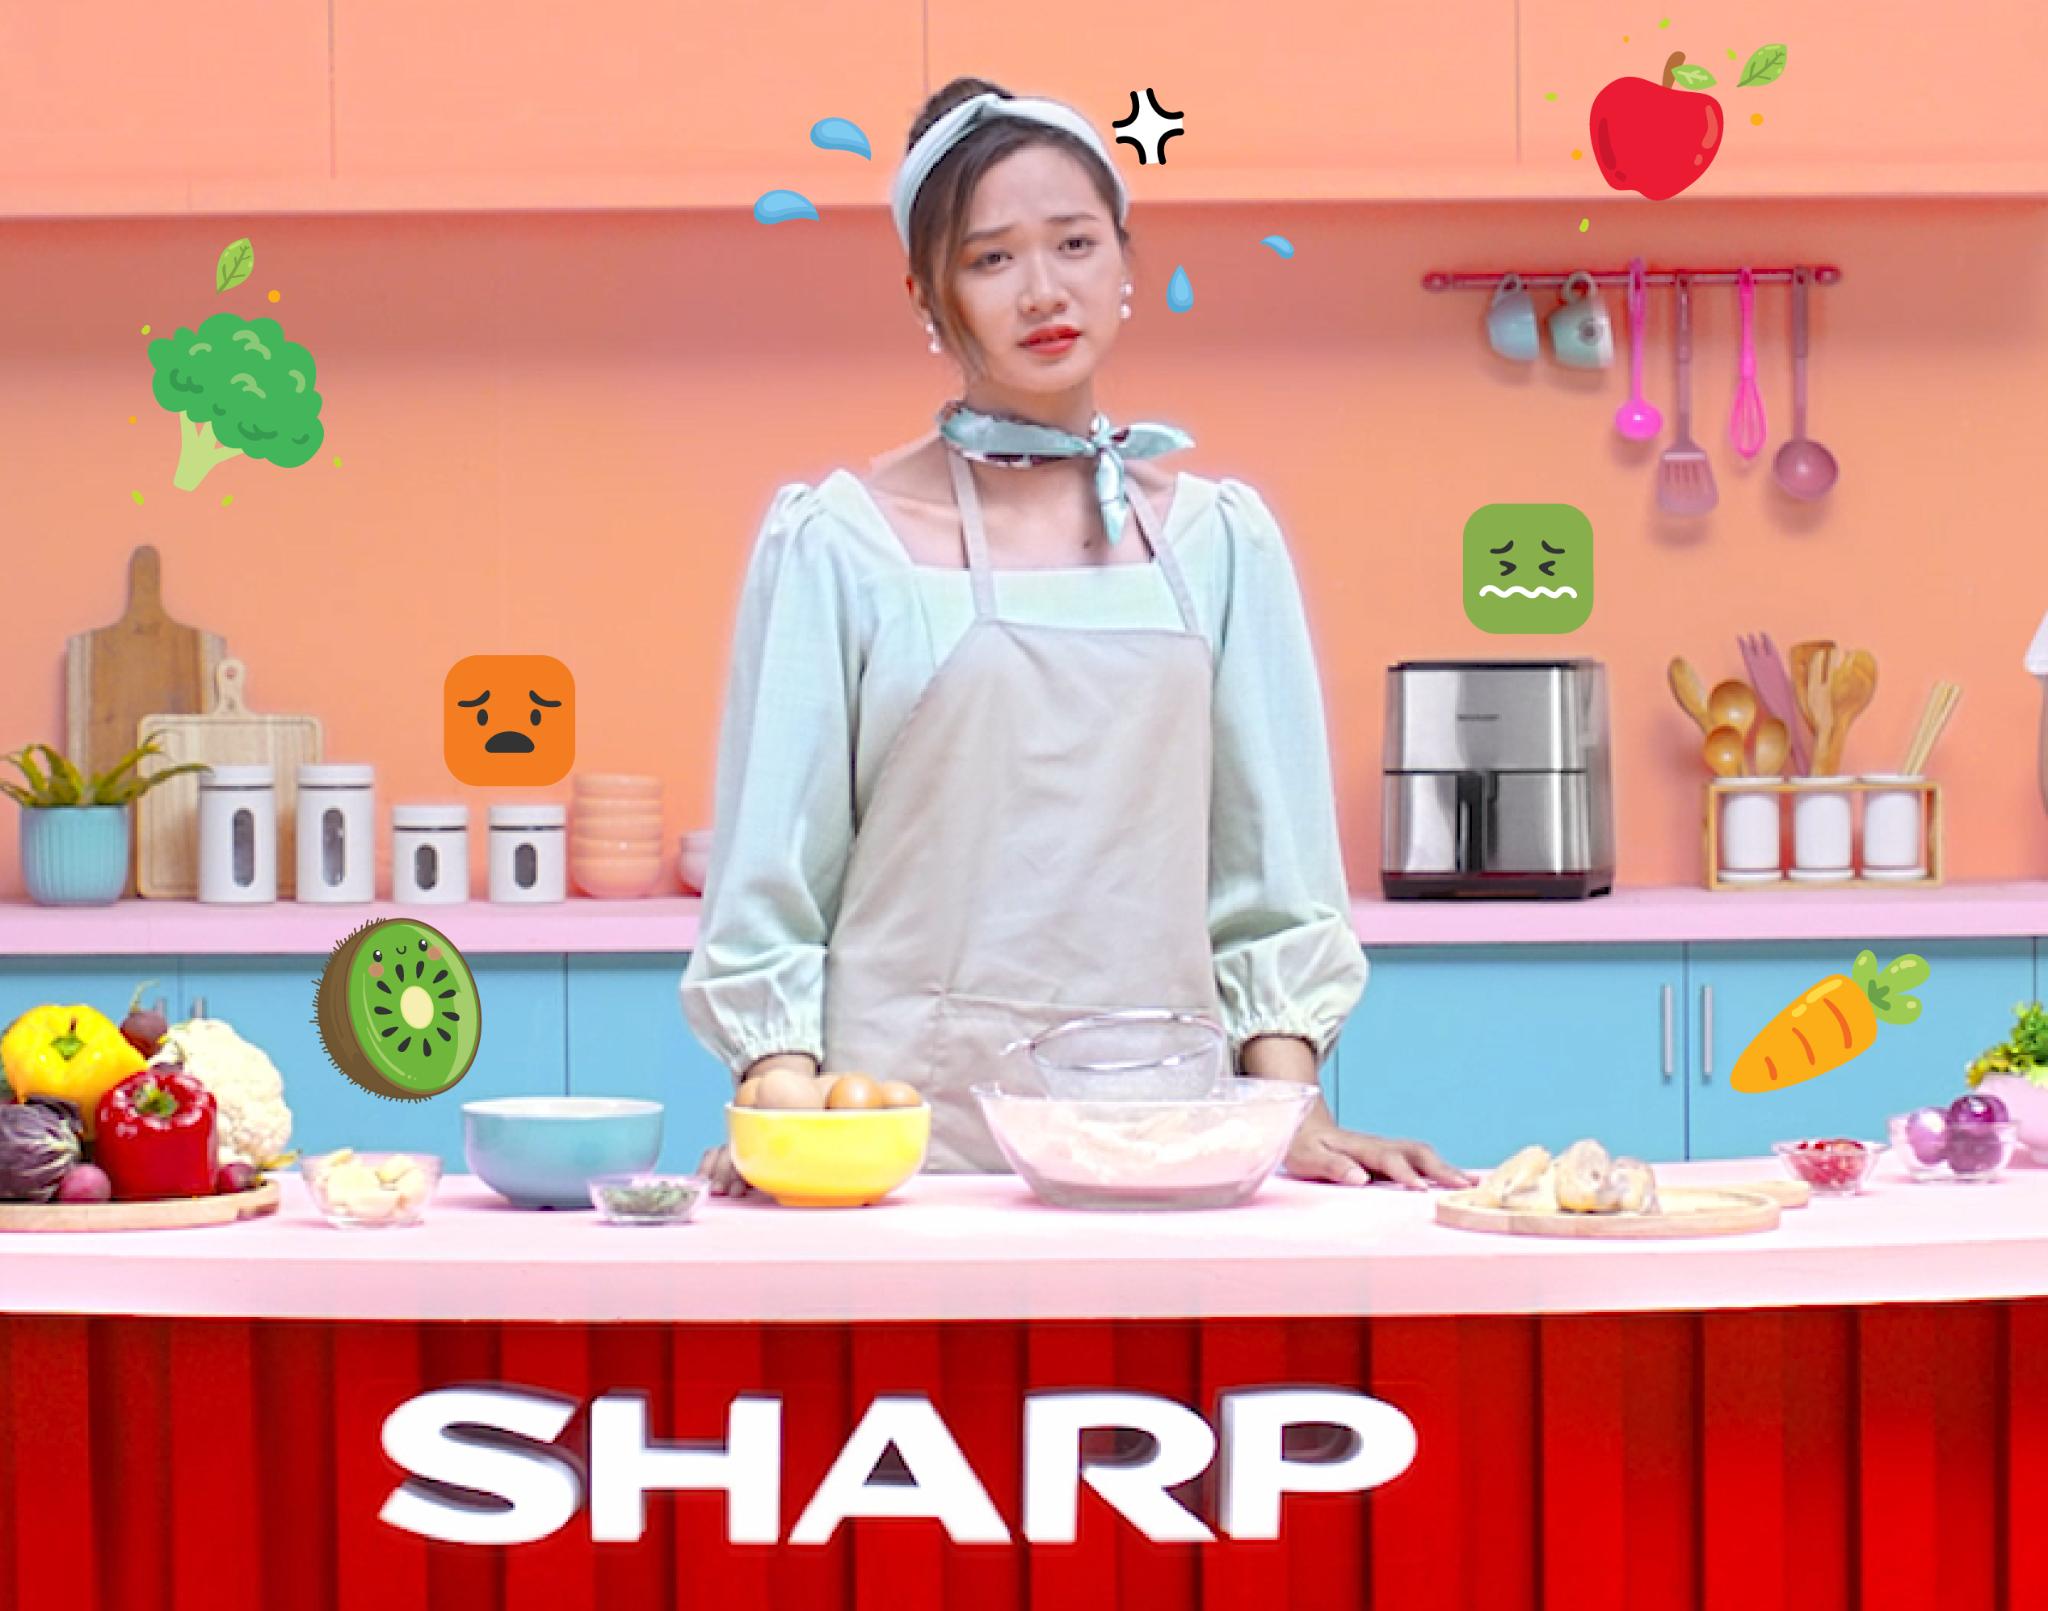 Bùi tai đã mắt với MV “Bếp vụng vẫn vui”: Lời khích lệ ngọt ngào cho những nàng “lóng ngóng”